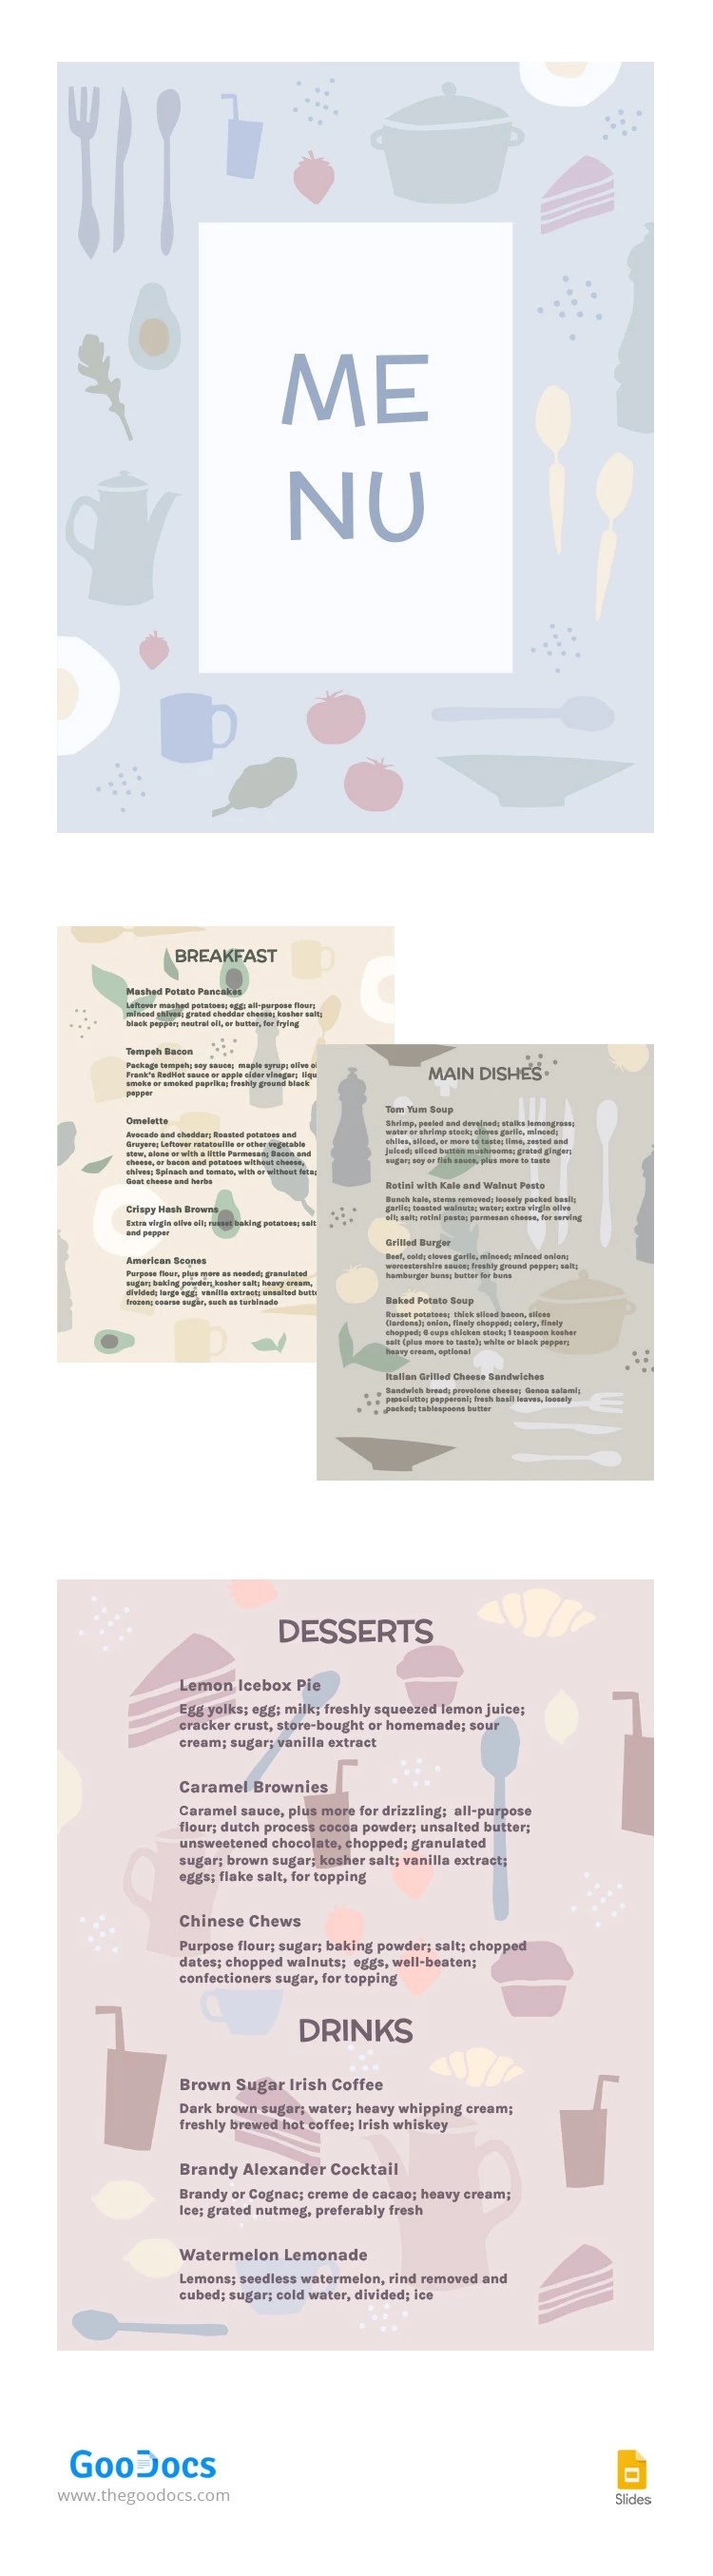 温和的插图餐厅菜单 - free Google Docs Template - 10063266